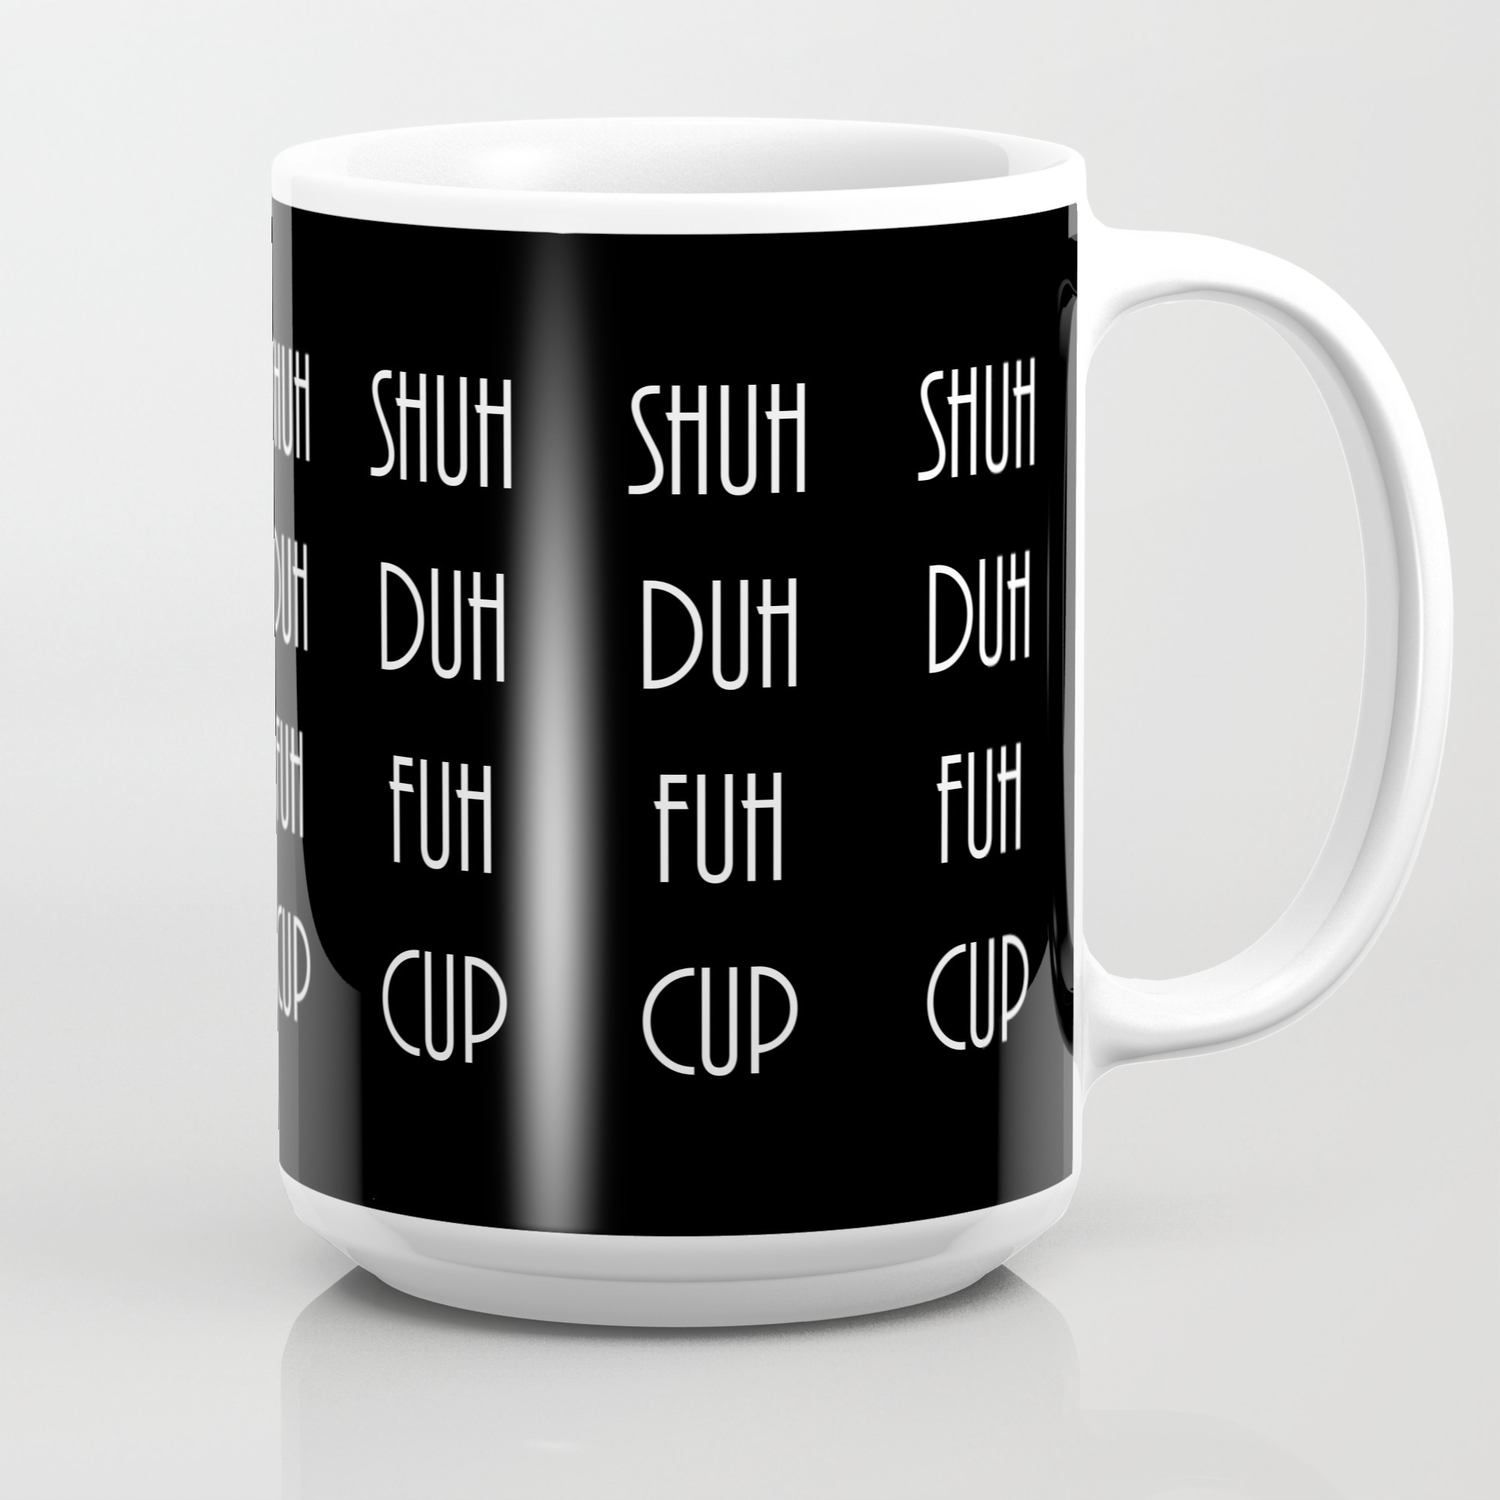 shuh-duh-fuh-cup-dark-mugs.jpg